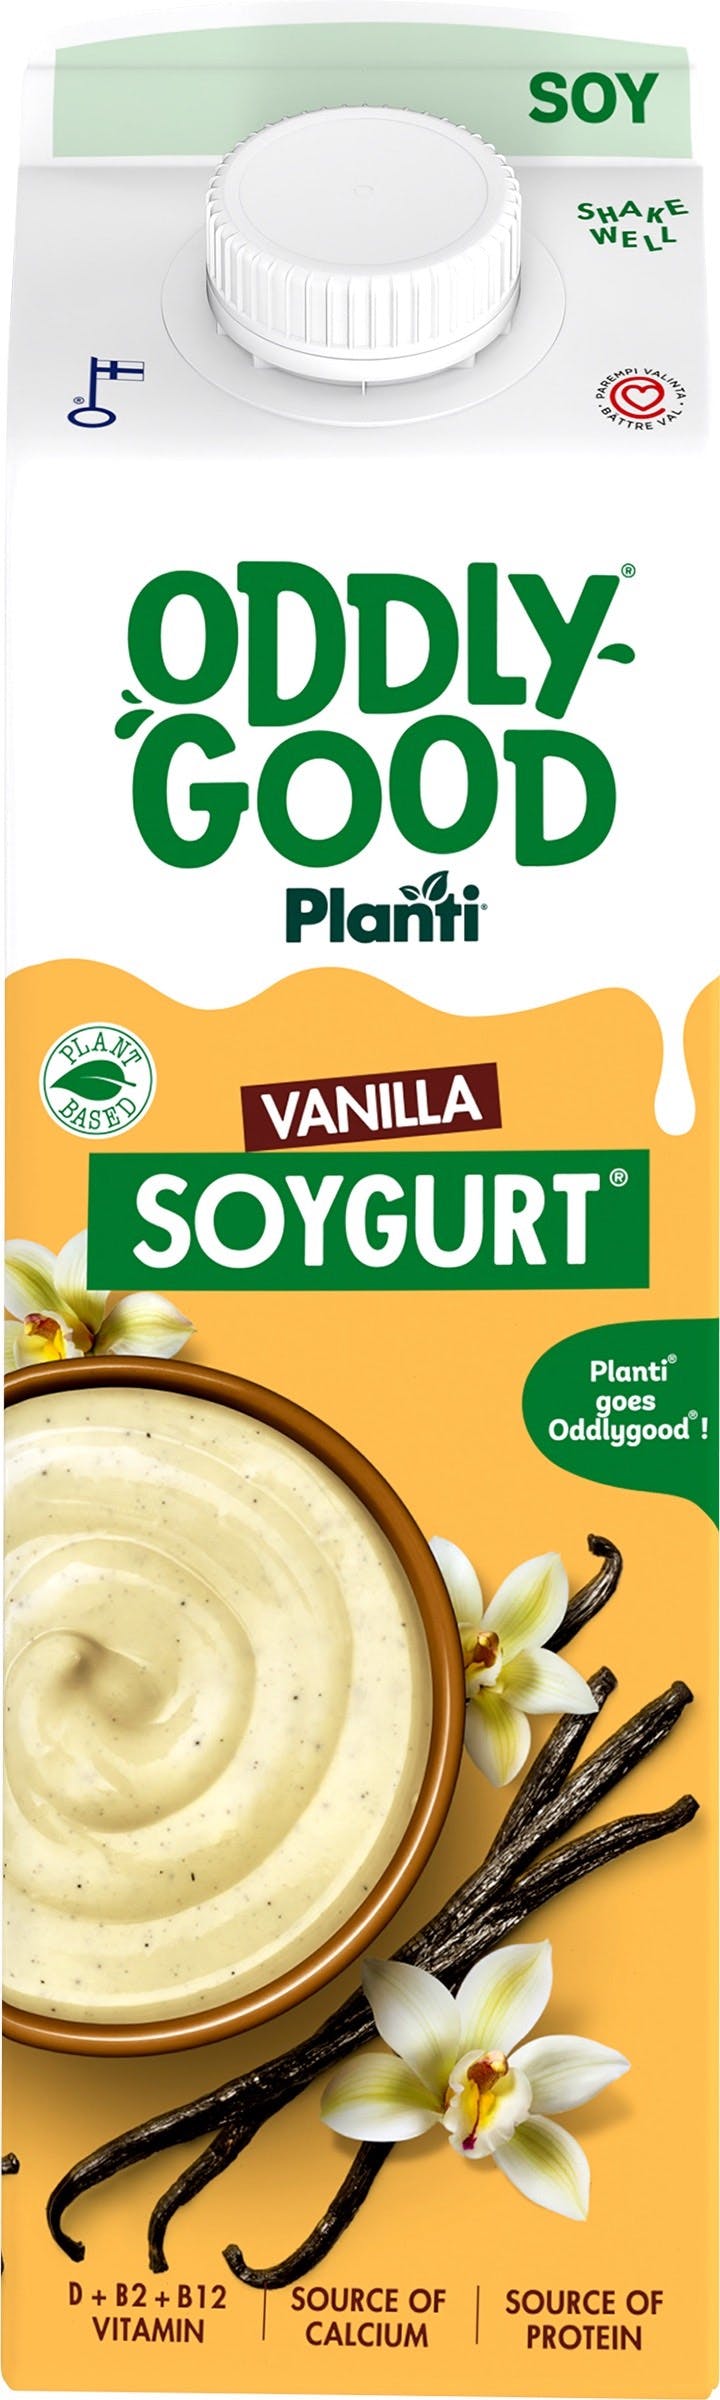 Soygurt Vanilla Oddlygood